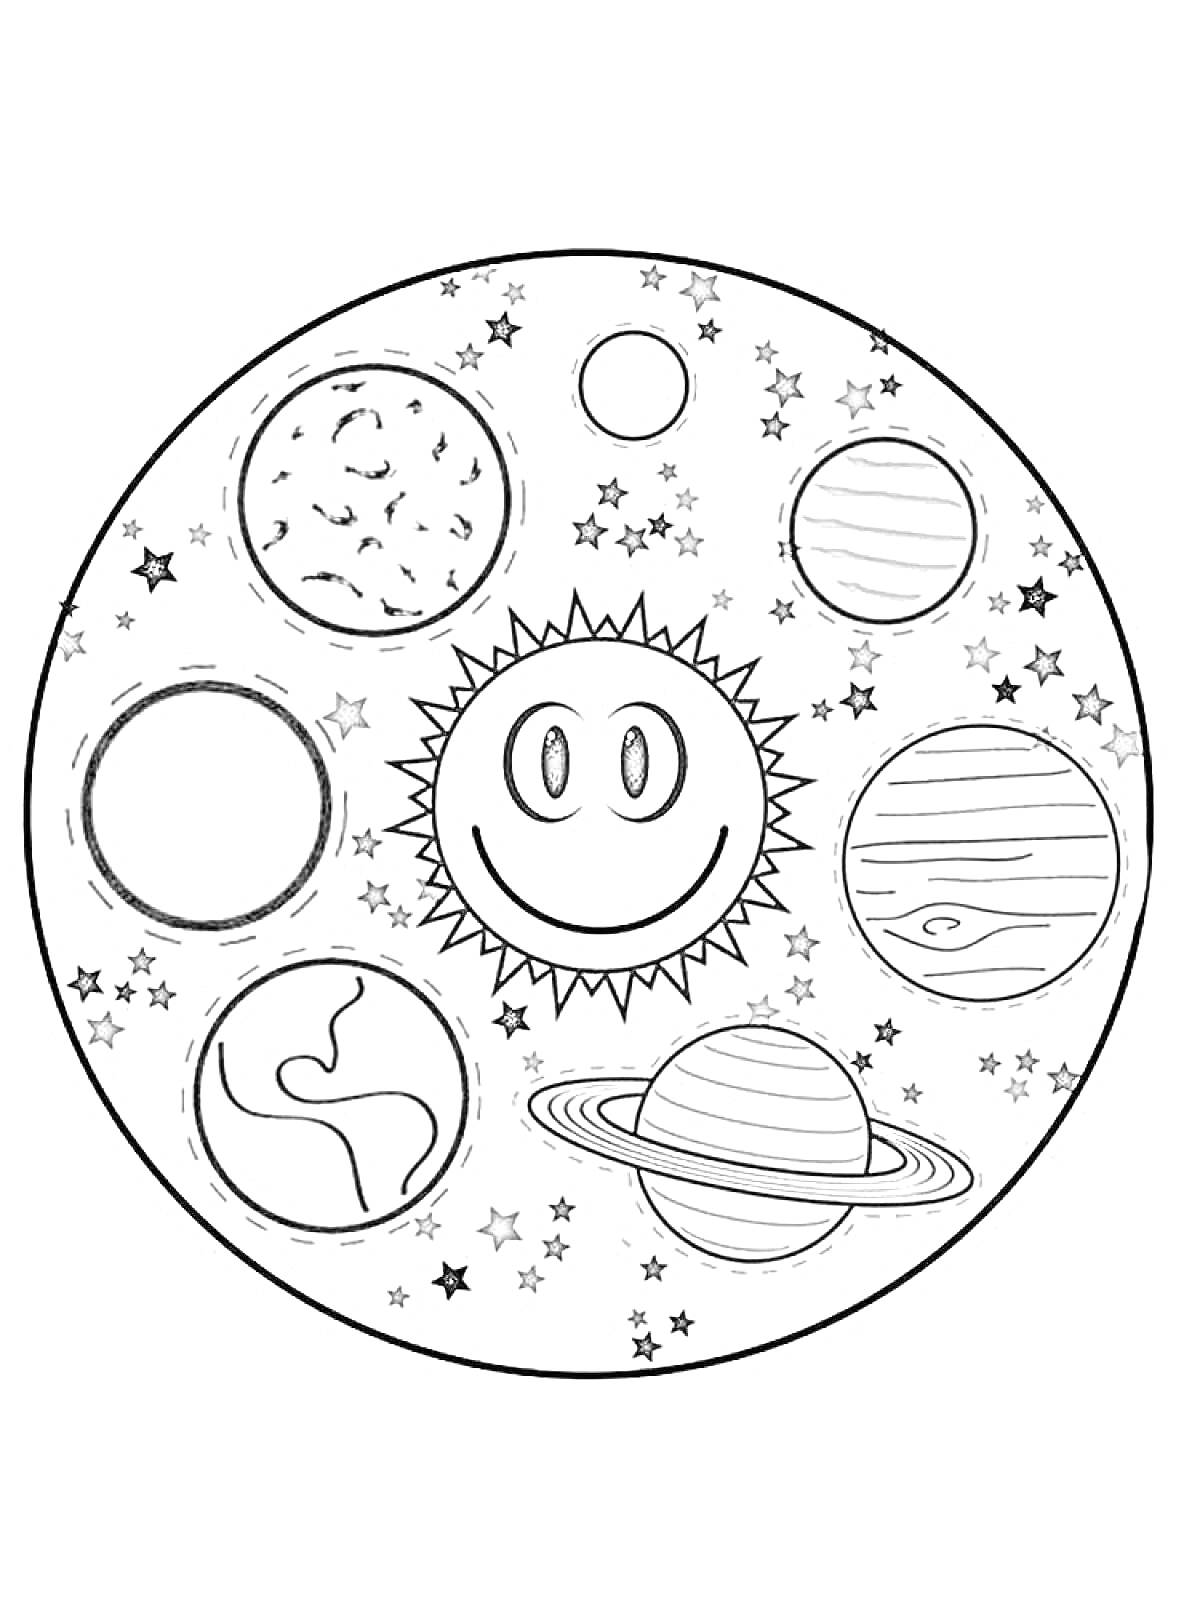 Раскраска Солнечная система с девятью небесными телами, звездами и улыбающимся Солнцем